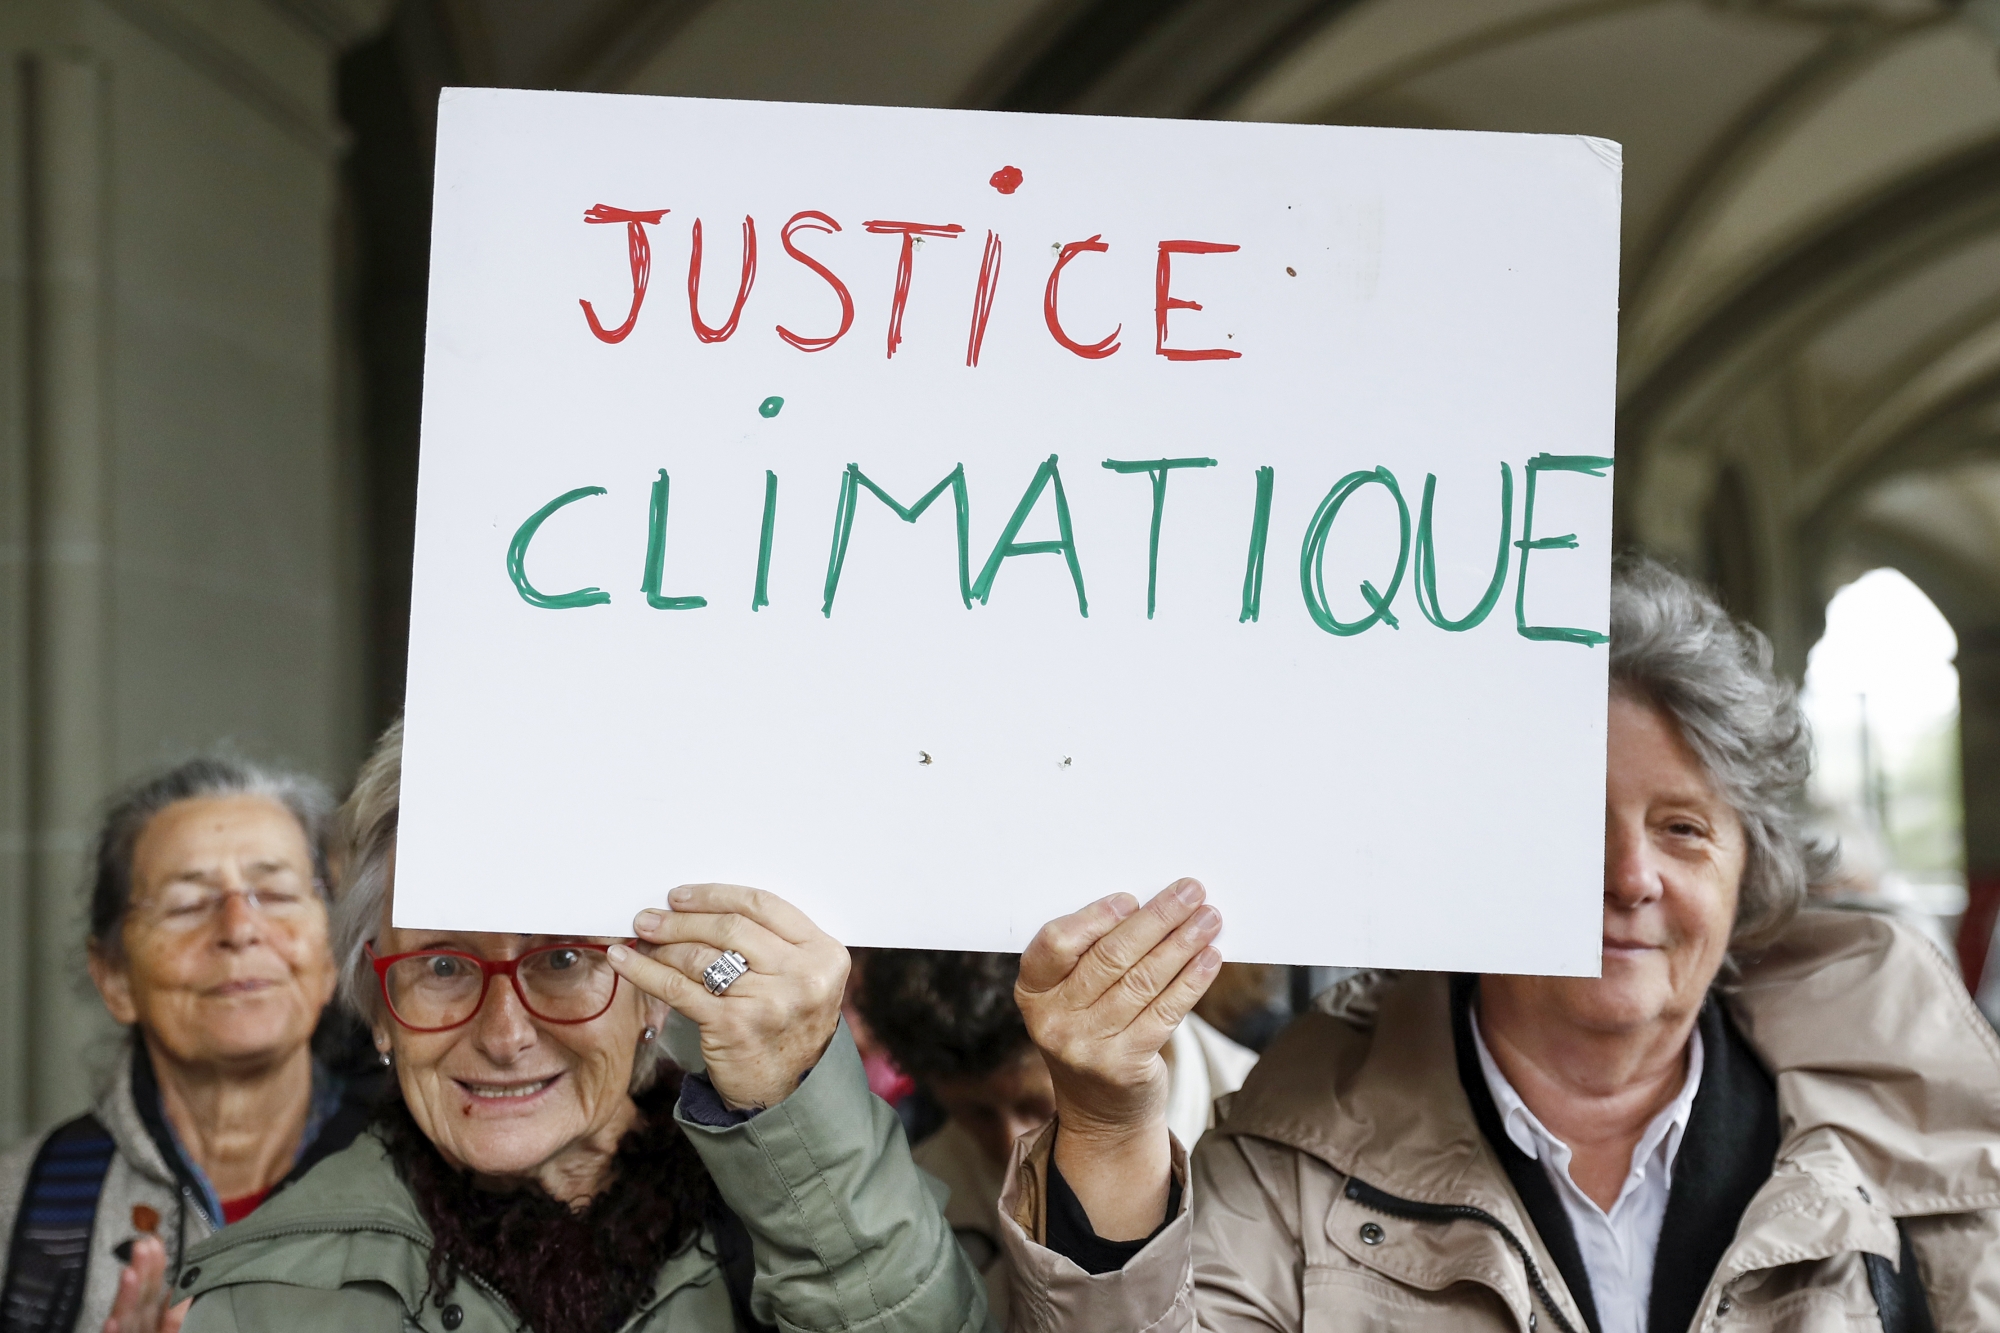 Seniorinnen halten eine Tafel mit der Aufschrift "Justice Climatique" hoch, nach einer Medienkonferenz des Vereins KlimaSeniorinnen, am Dienstag, 25. Oktober 2016 in Bern. Der Verein verlangt eine Korrektur der schweizerischen Klimapolitik und reicht eine Klage beim Bund ein. (KEYSTONE/Peter Klaunzer)